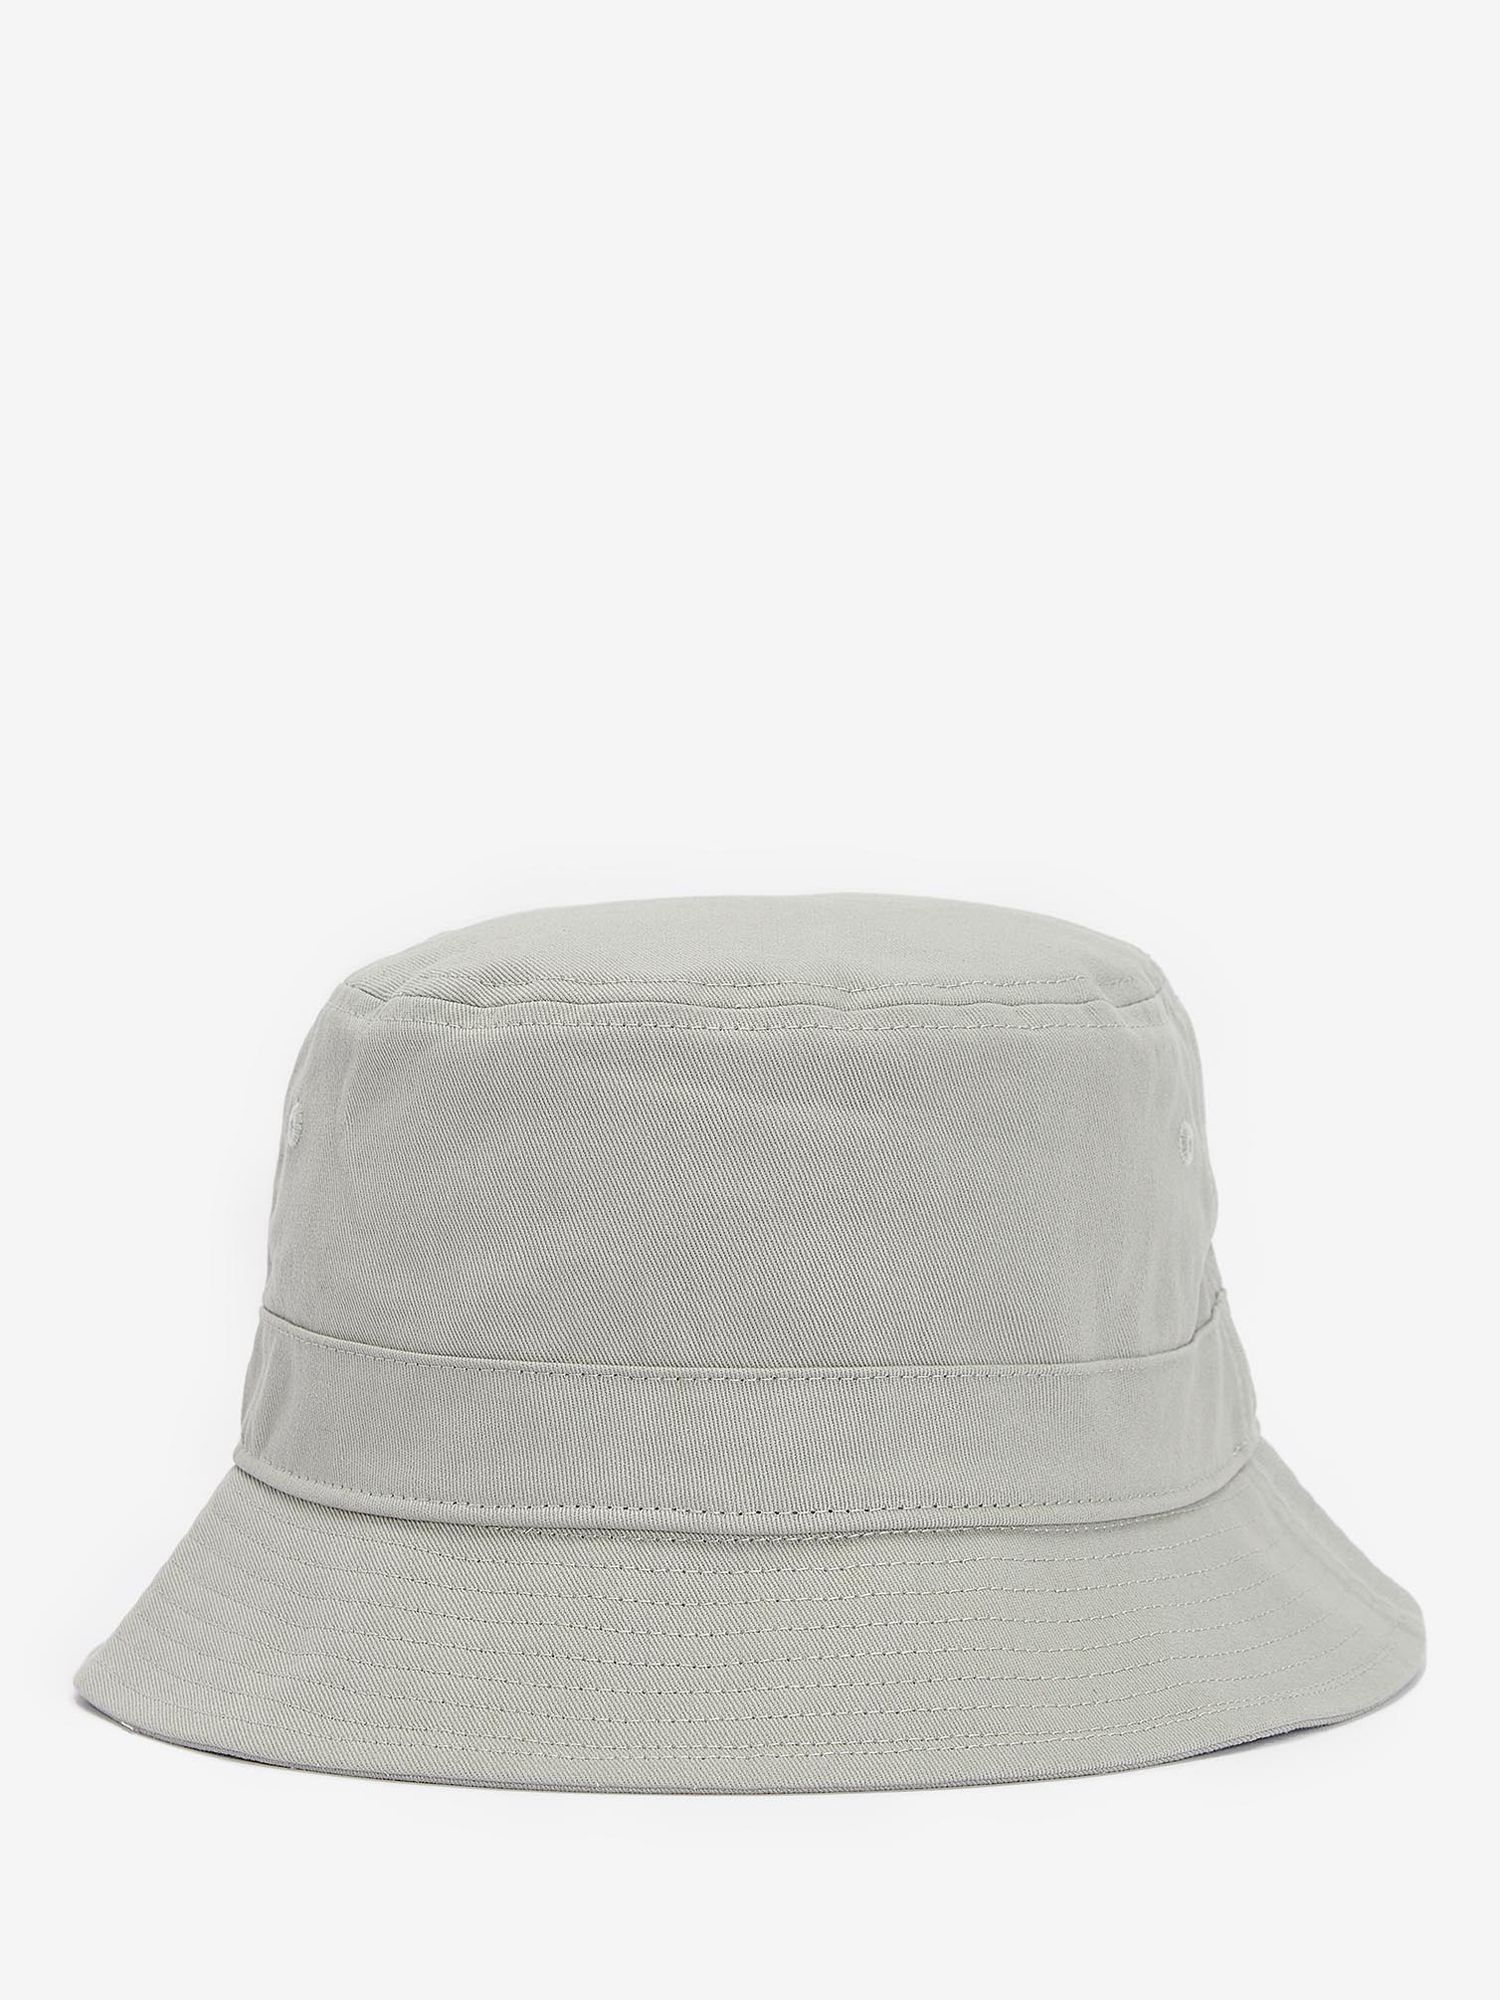 Barbour Classic Bucket Hat, Green, S